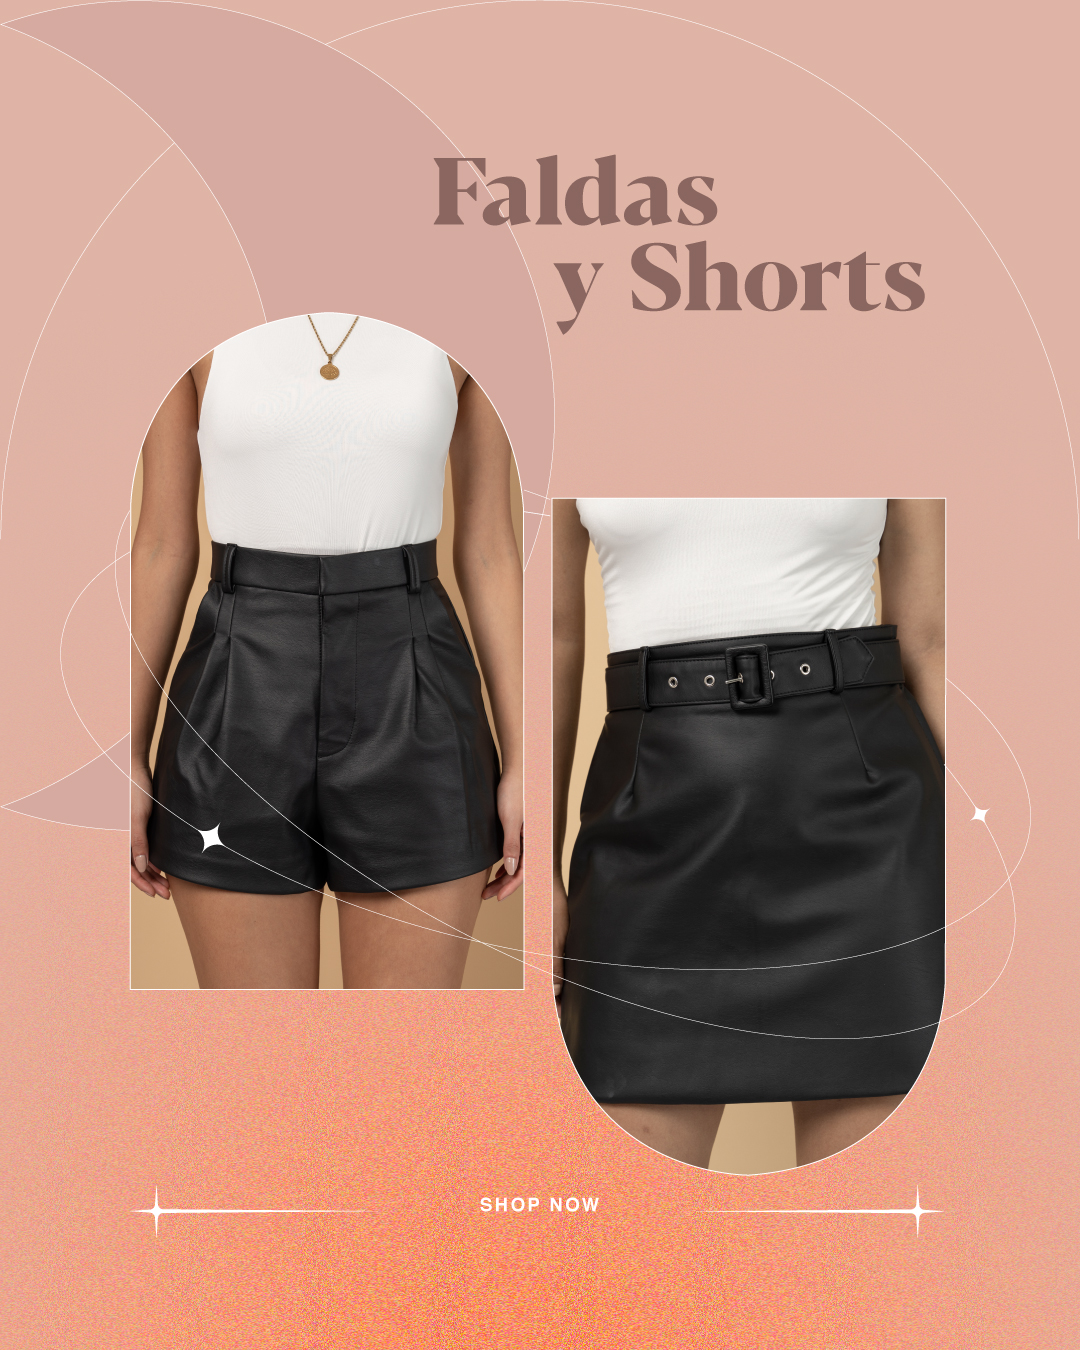 Faldas y shorts